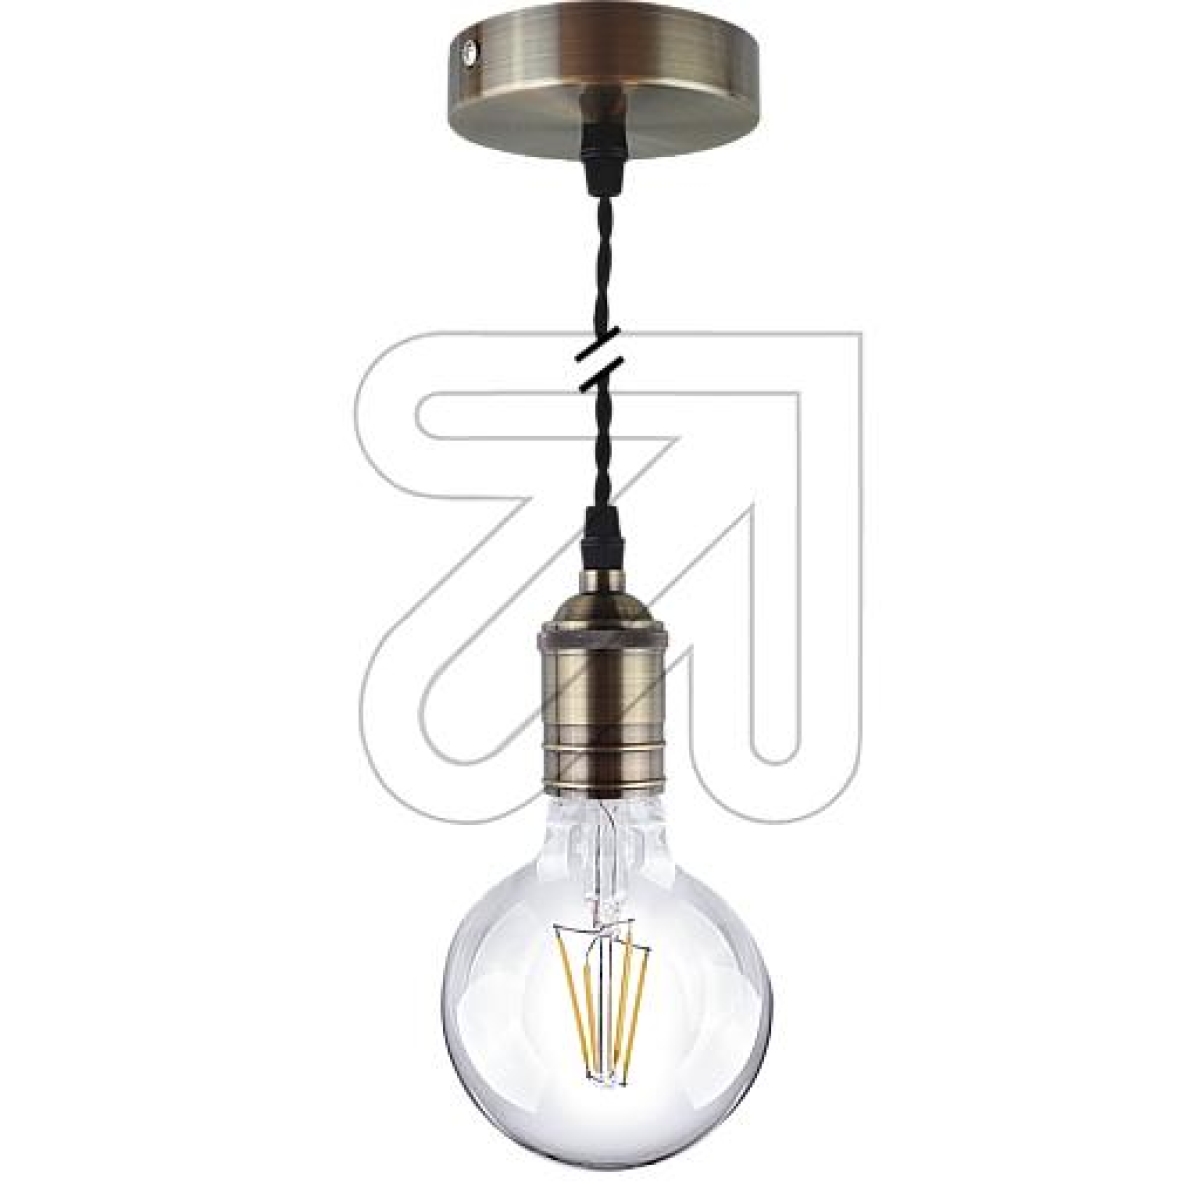 LEDmaxxMetal lamp pendulum bronze PLM009